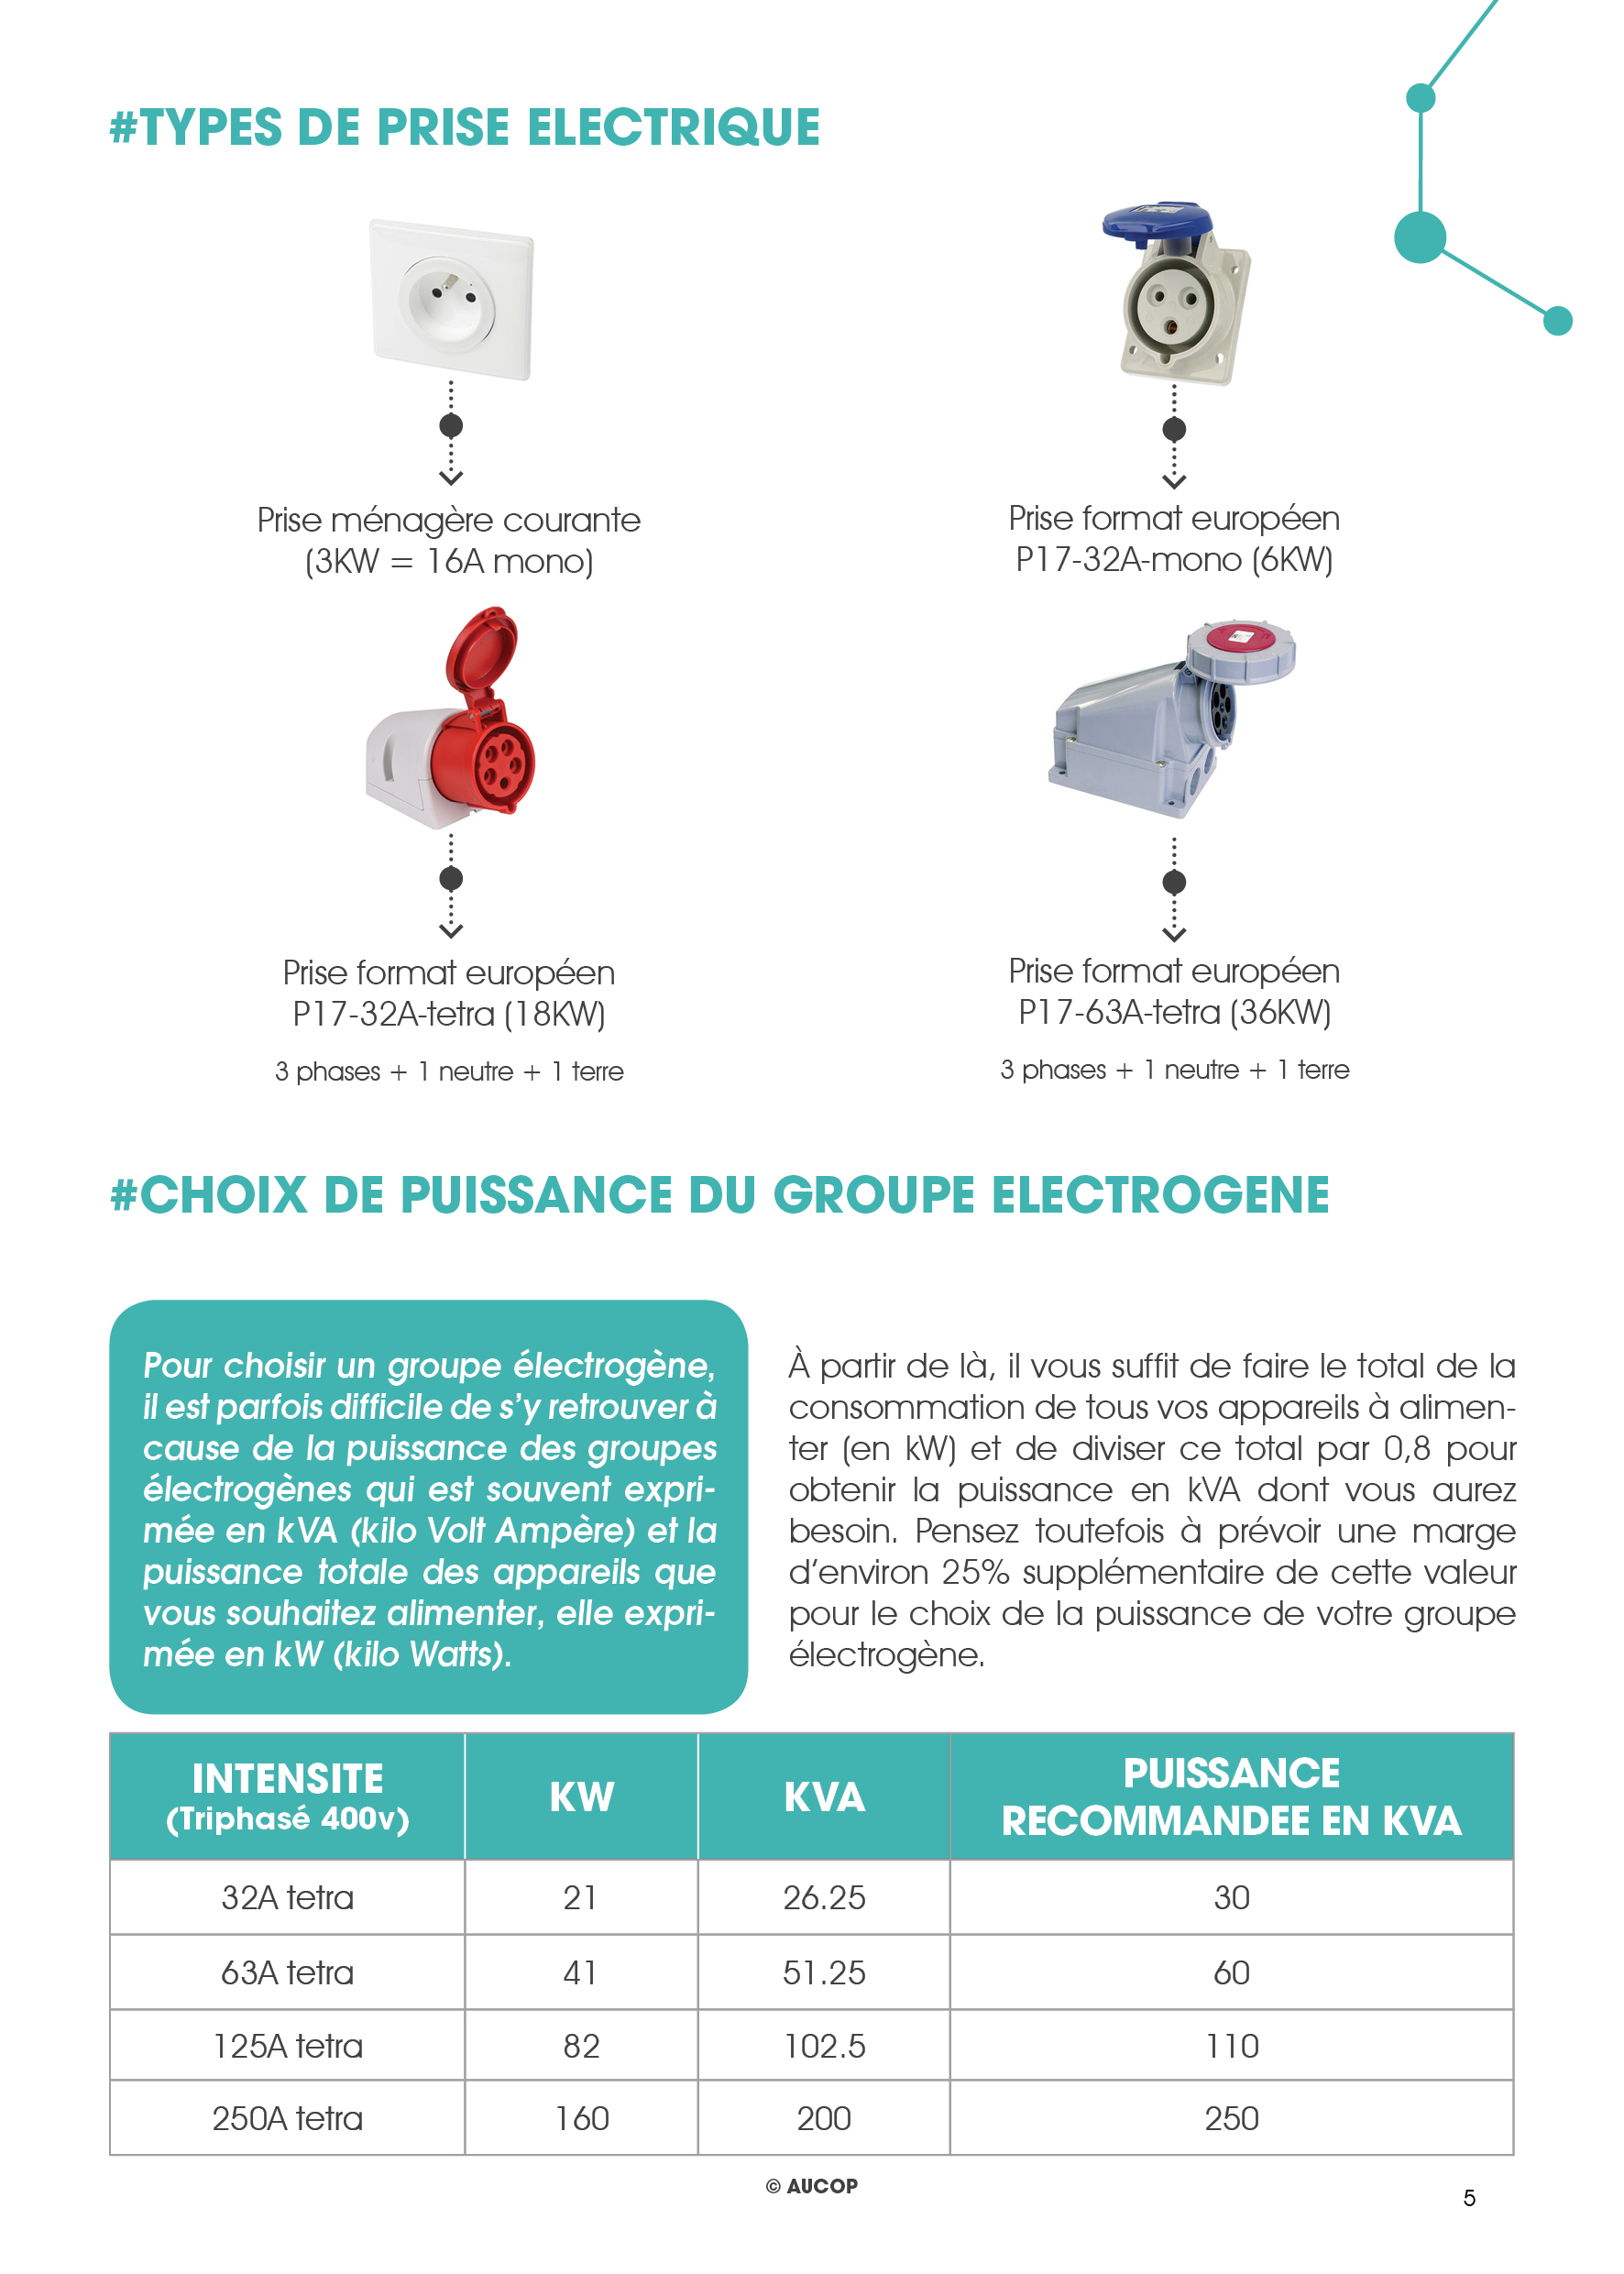 Kit de prod by Aucop - repérage-prises electriques-choix de puissance